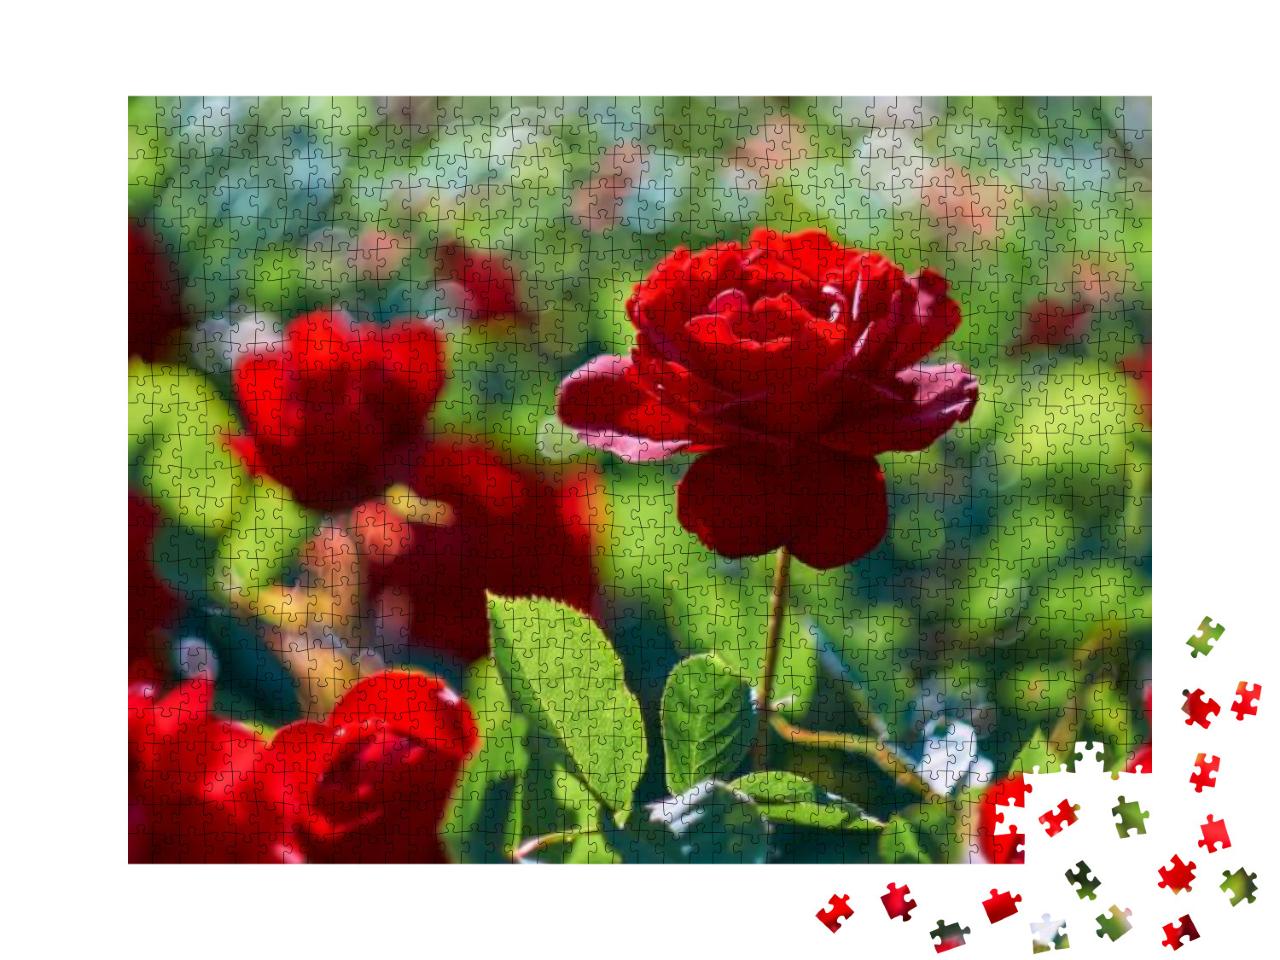 Puzzle 1000 Teile „Rote Rose im blühenden Rosengarten“